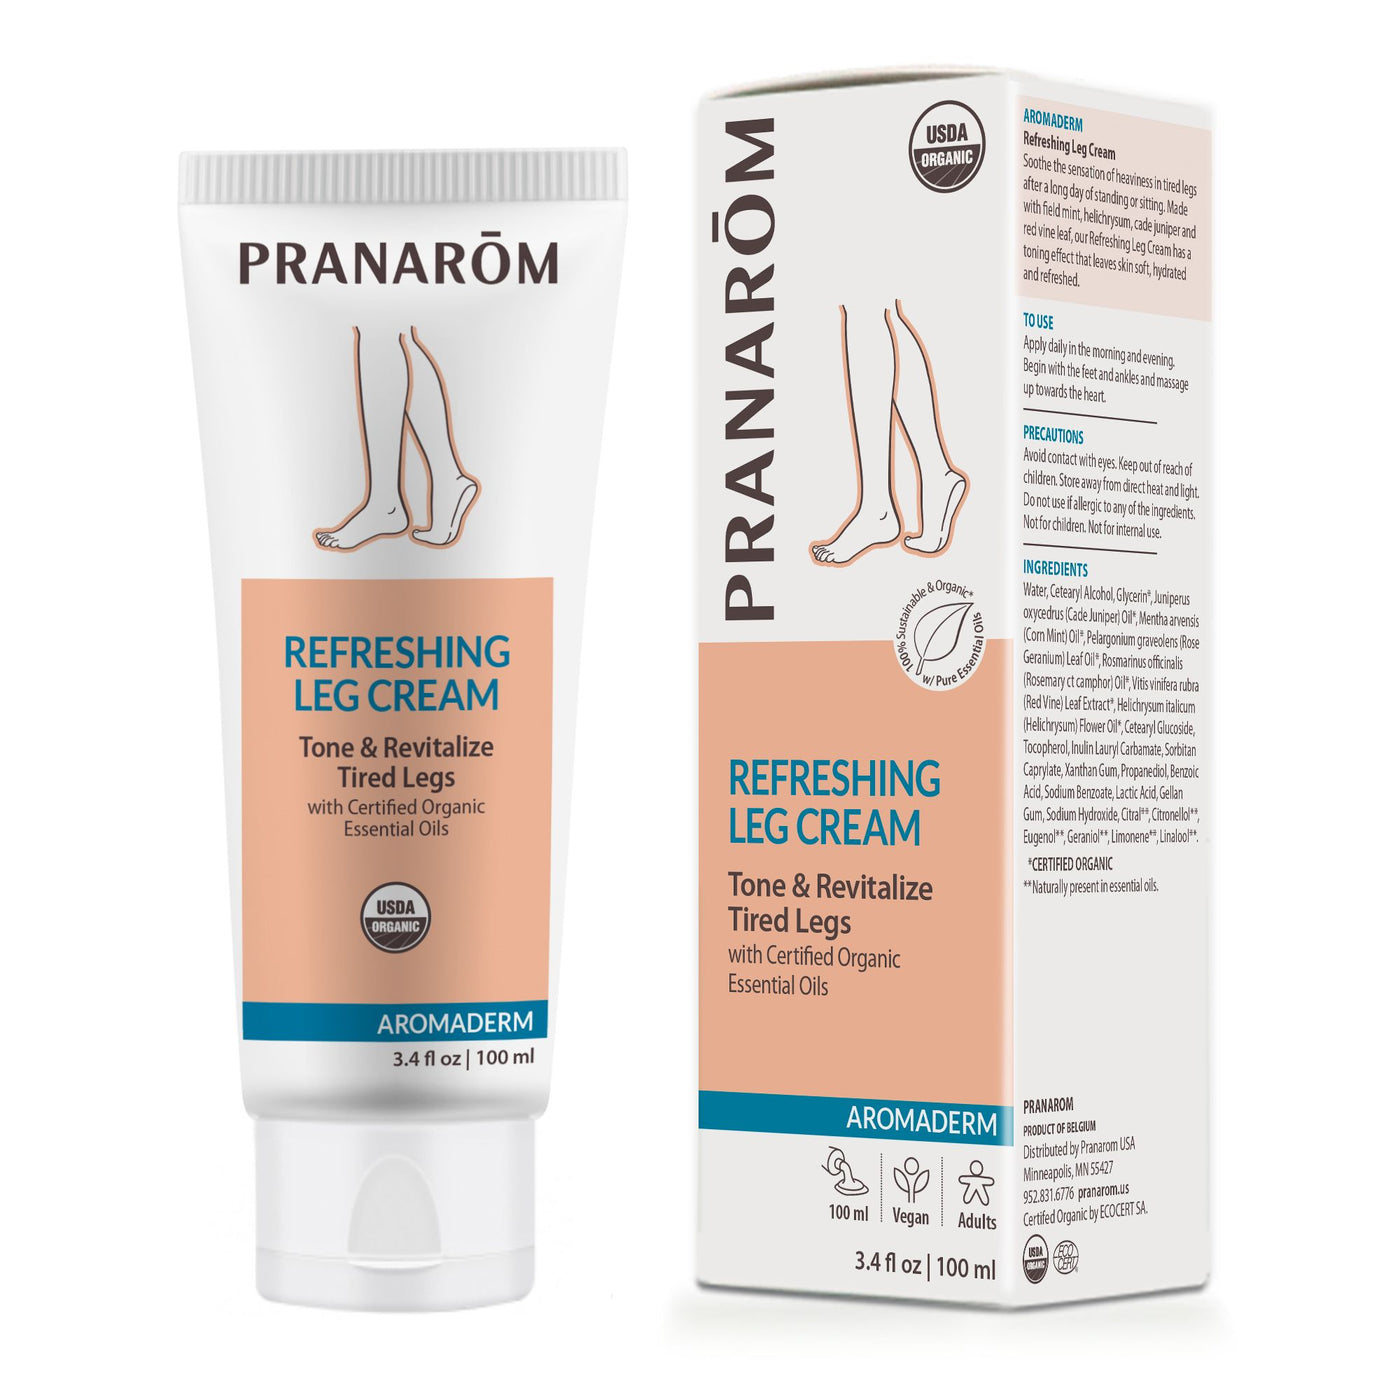 Pranarom: Refreshing Leg Cream